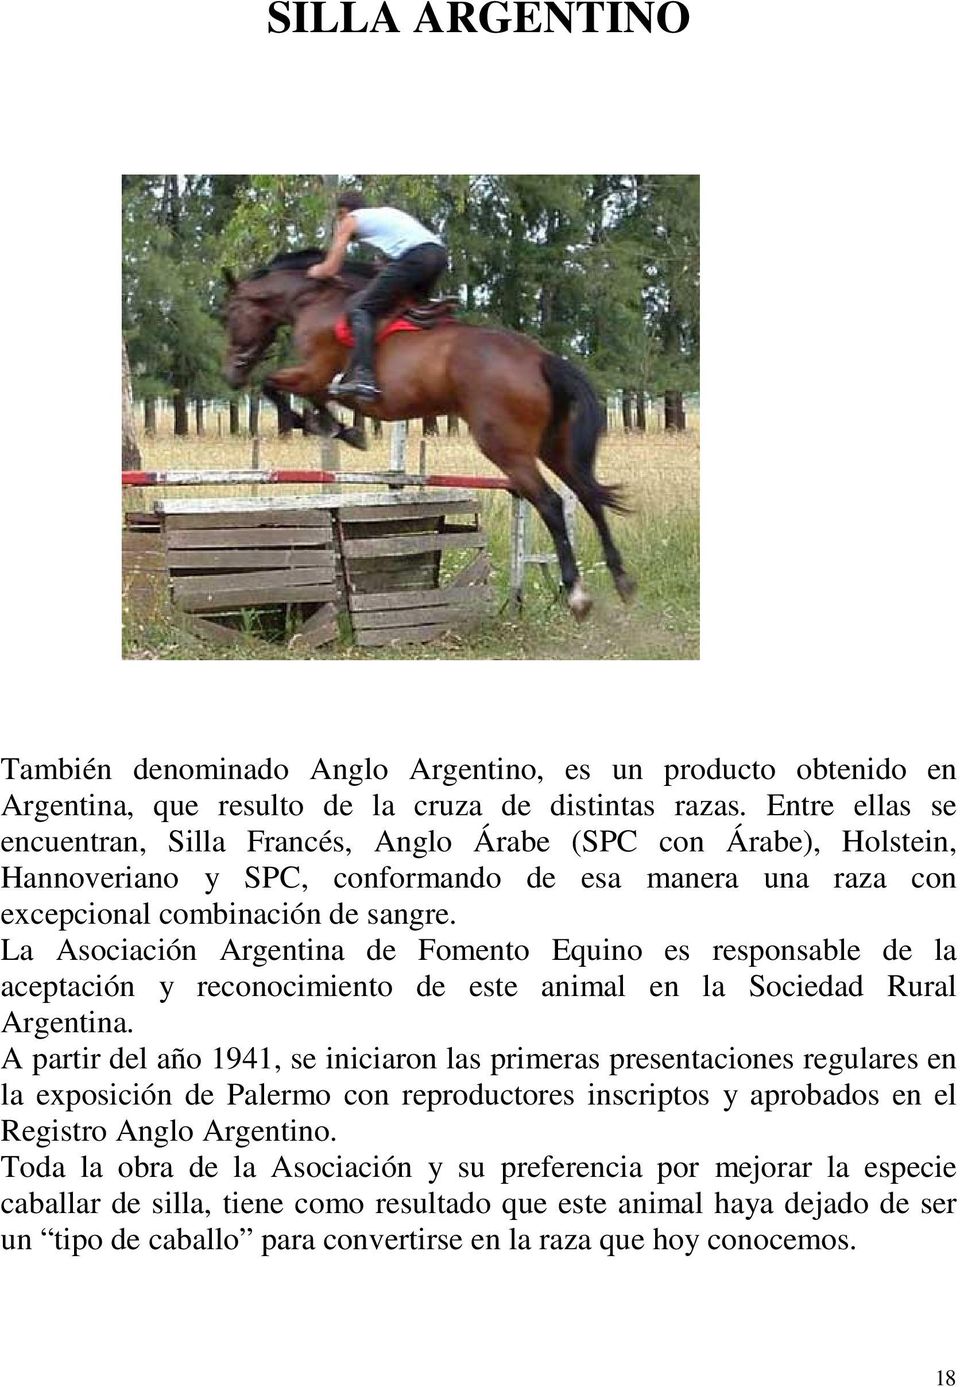 La Asociación Argentina de Fomento Equino es responsable de la aceptación y reconocimiento de este animal en la Sociedad Rural Argentina.